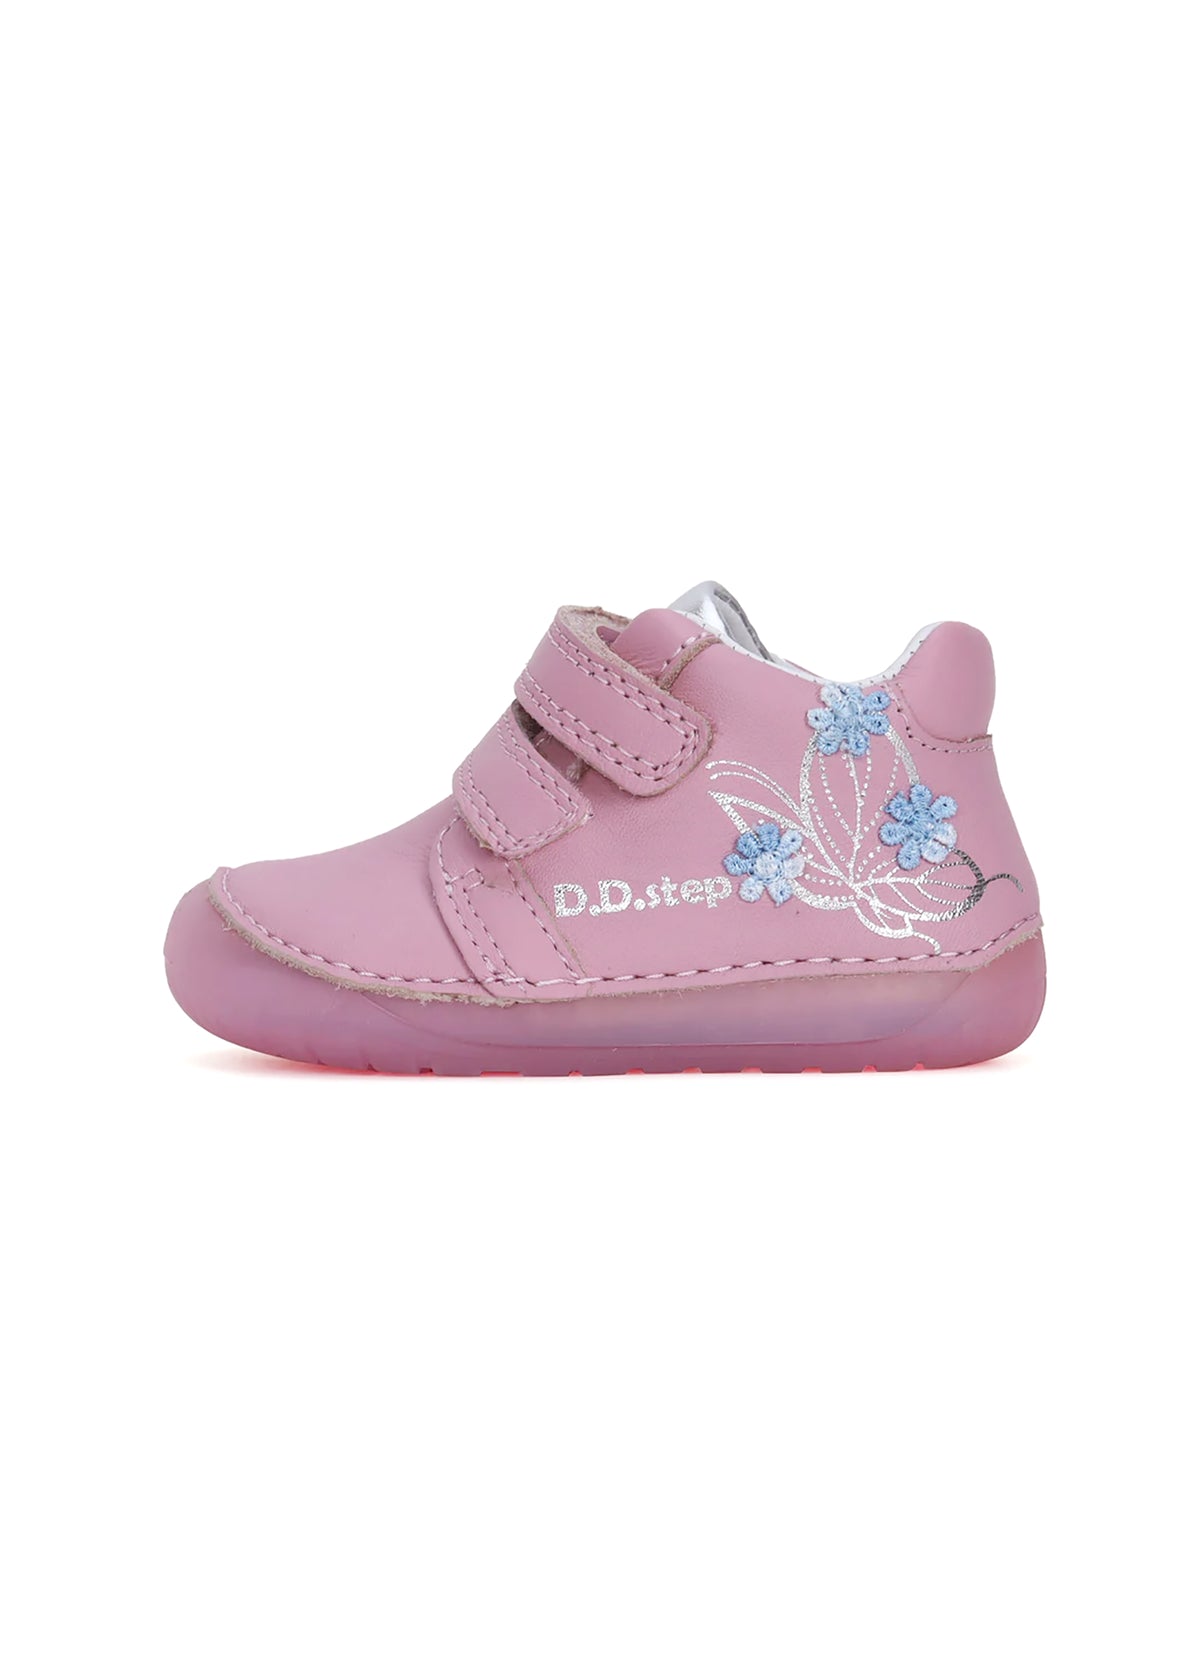 Barns första steg skor - rosa läder, blommor